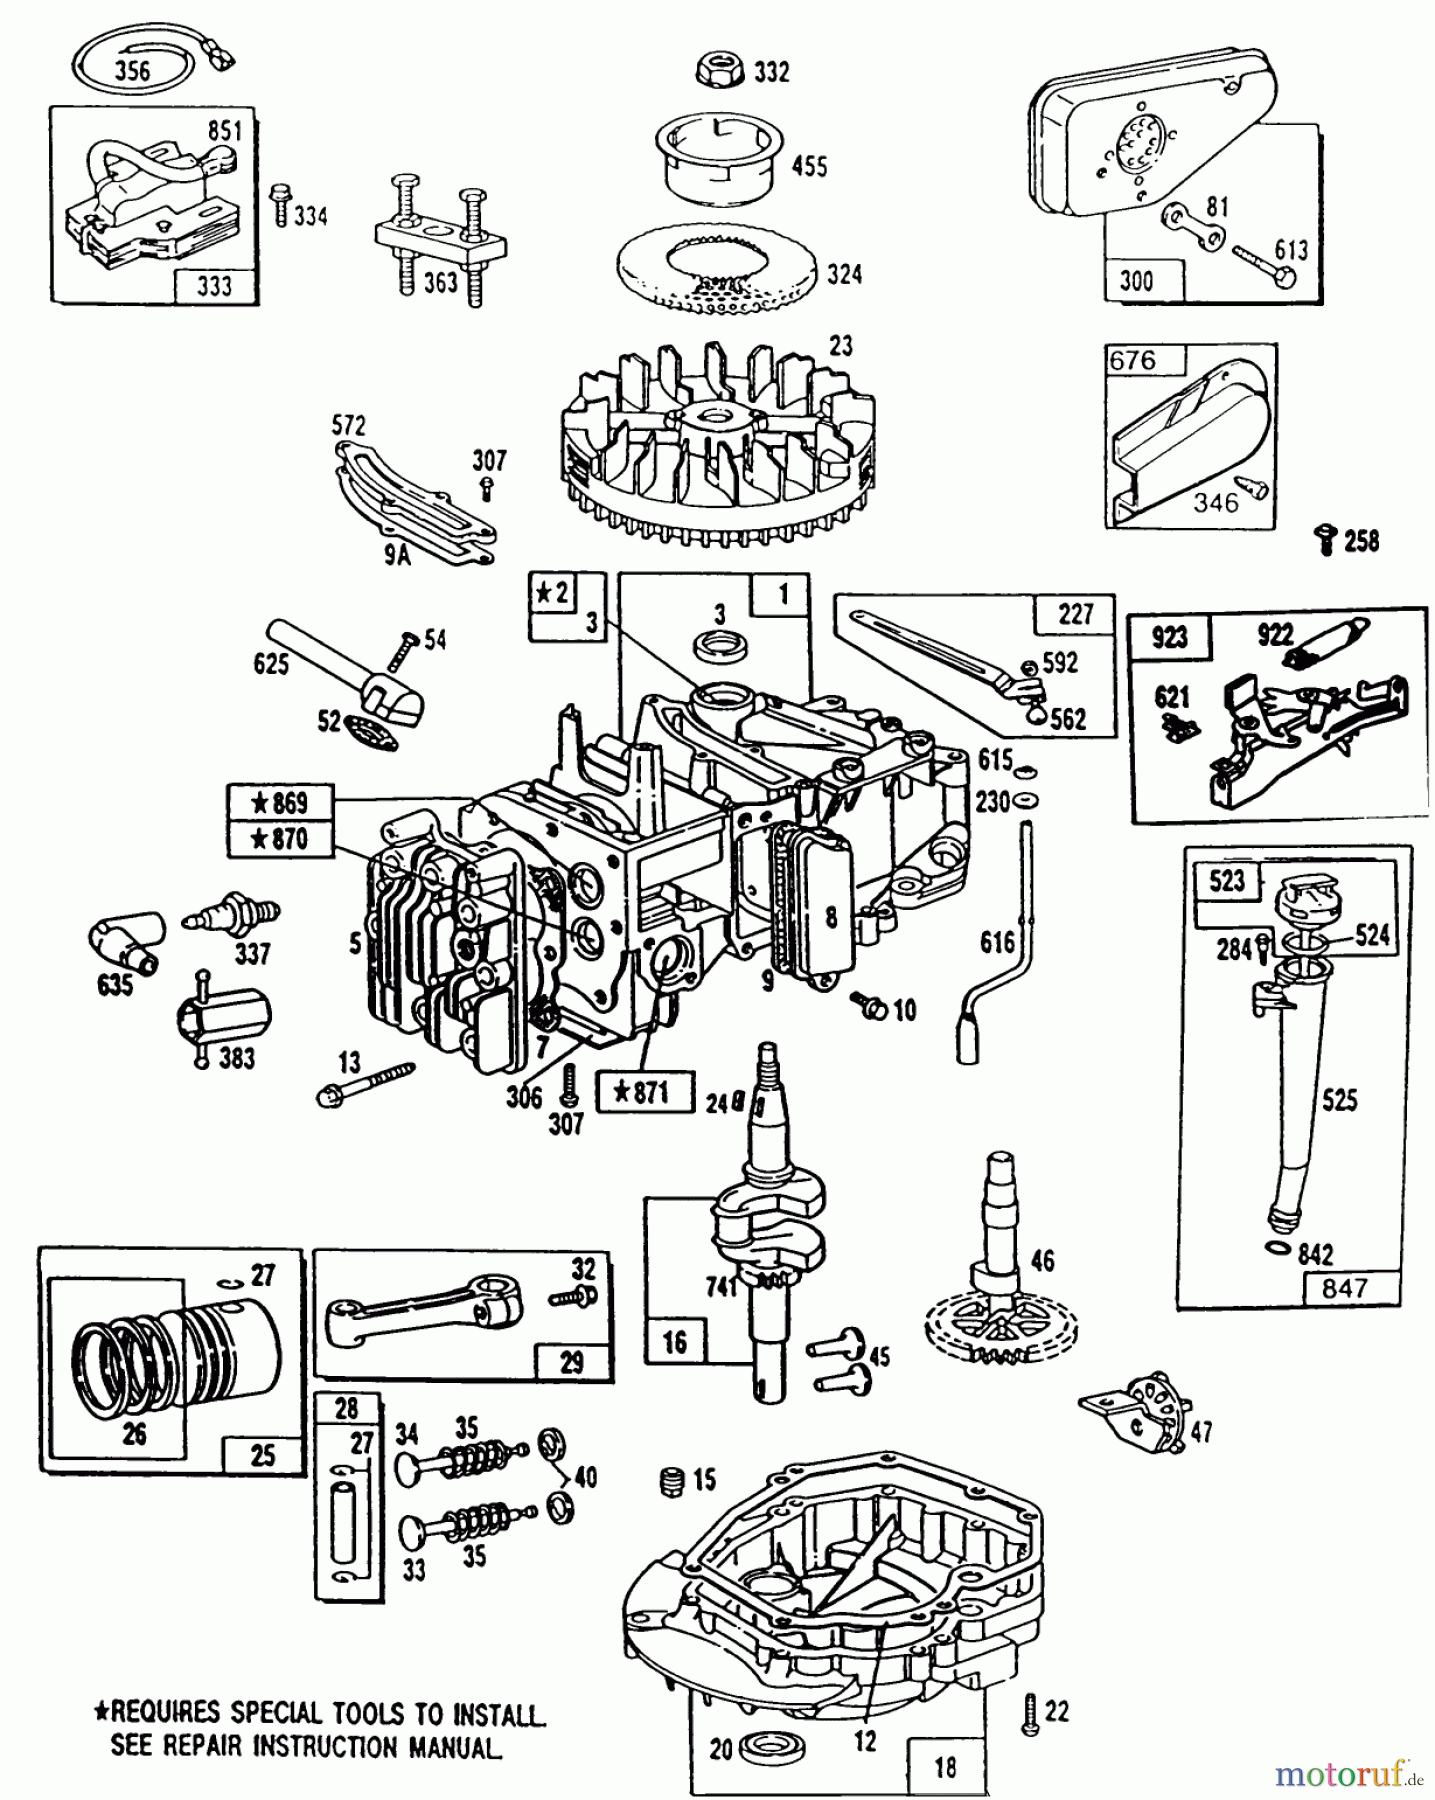  Toro Neu Mowers, Walk-Behind Seite 1 20668 - Toro Lawnmower, 1990 (0000001-0999999) ENGINE MODEL NO. 124702-3115-01 #1